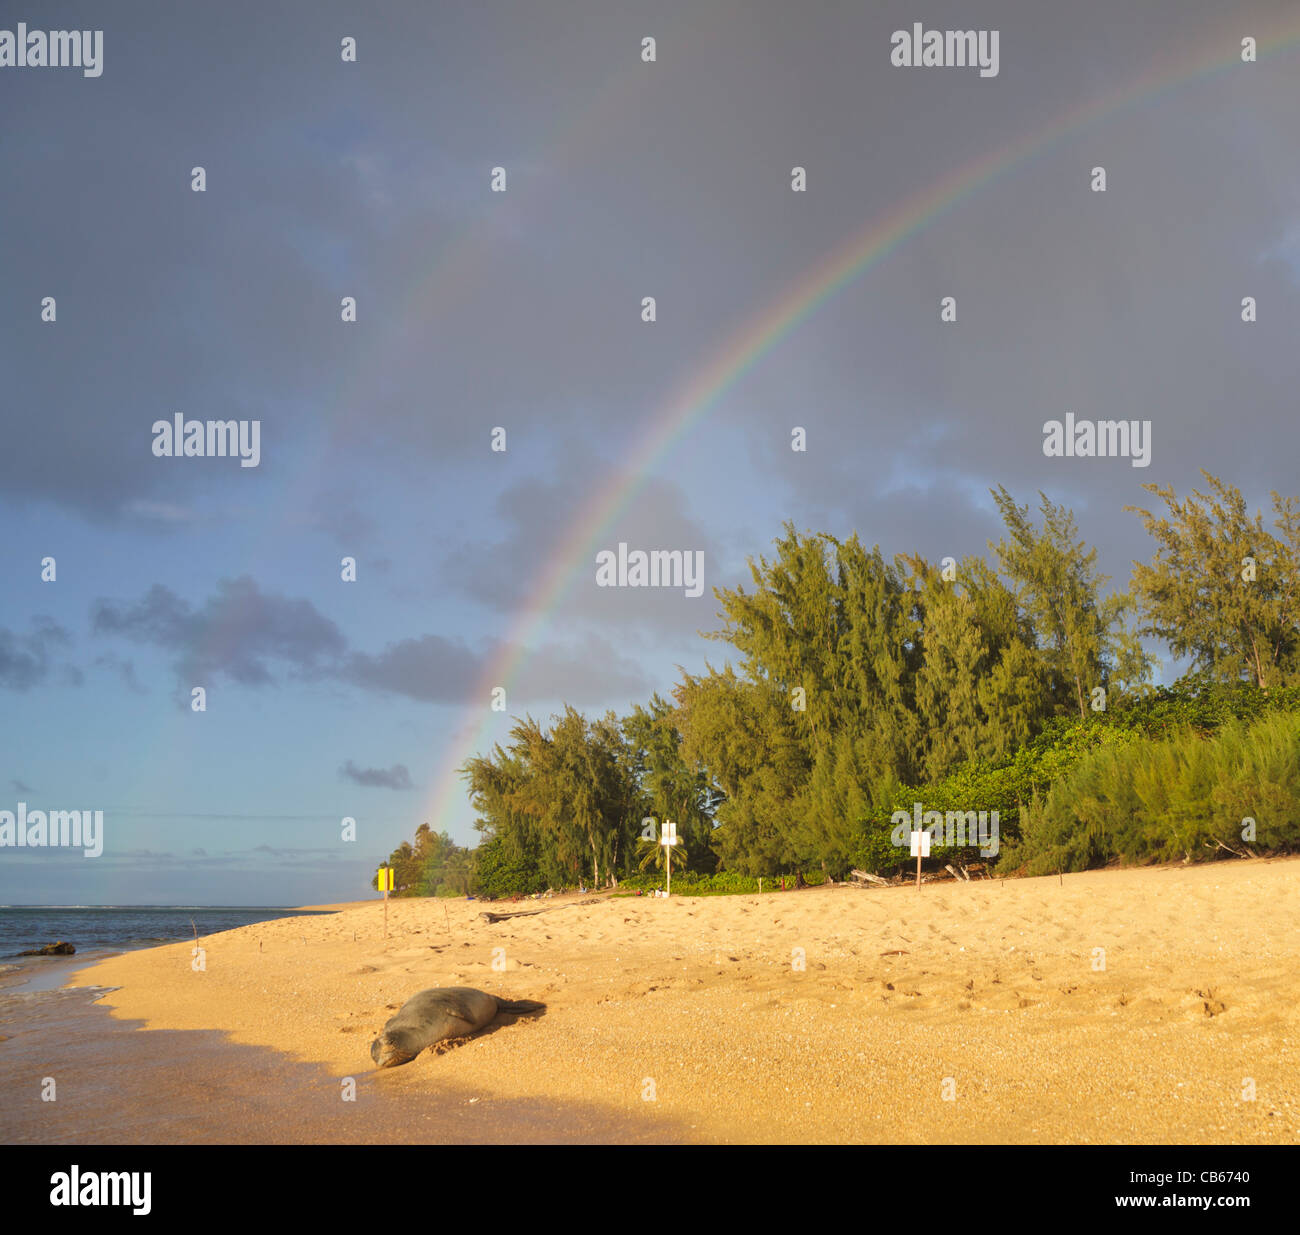 Hawaiian monk seal rests on beach in Haena, Kauai, near Tunnels Beach as double rainbows color the sky Stock Photo